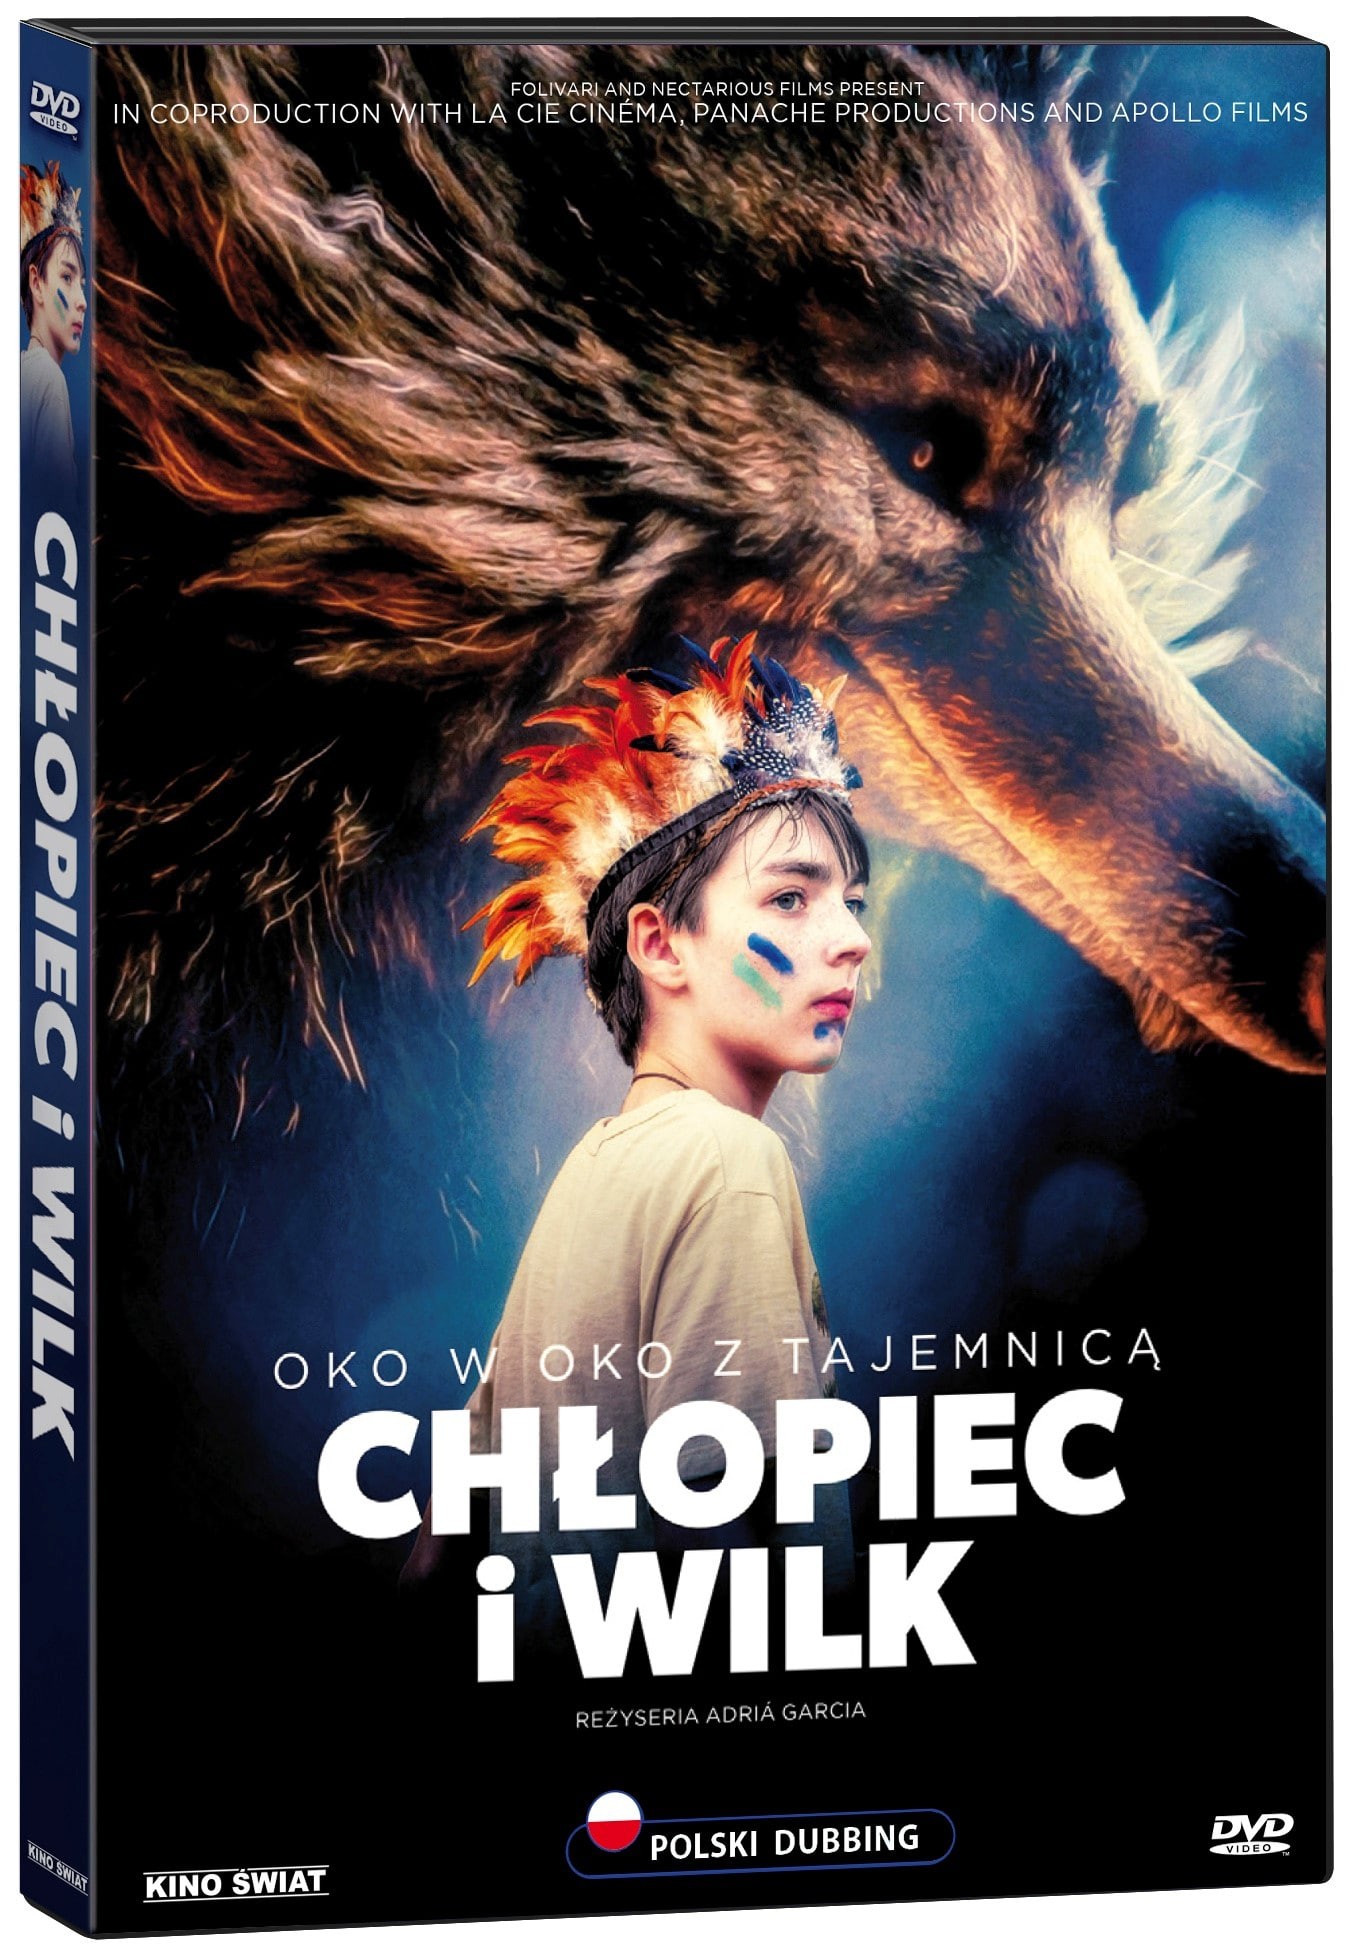 Chlopiec-i-wilk_3D-DVD-min.jpg